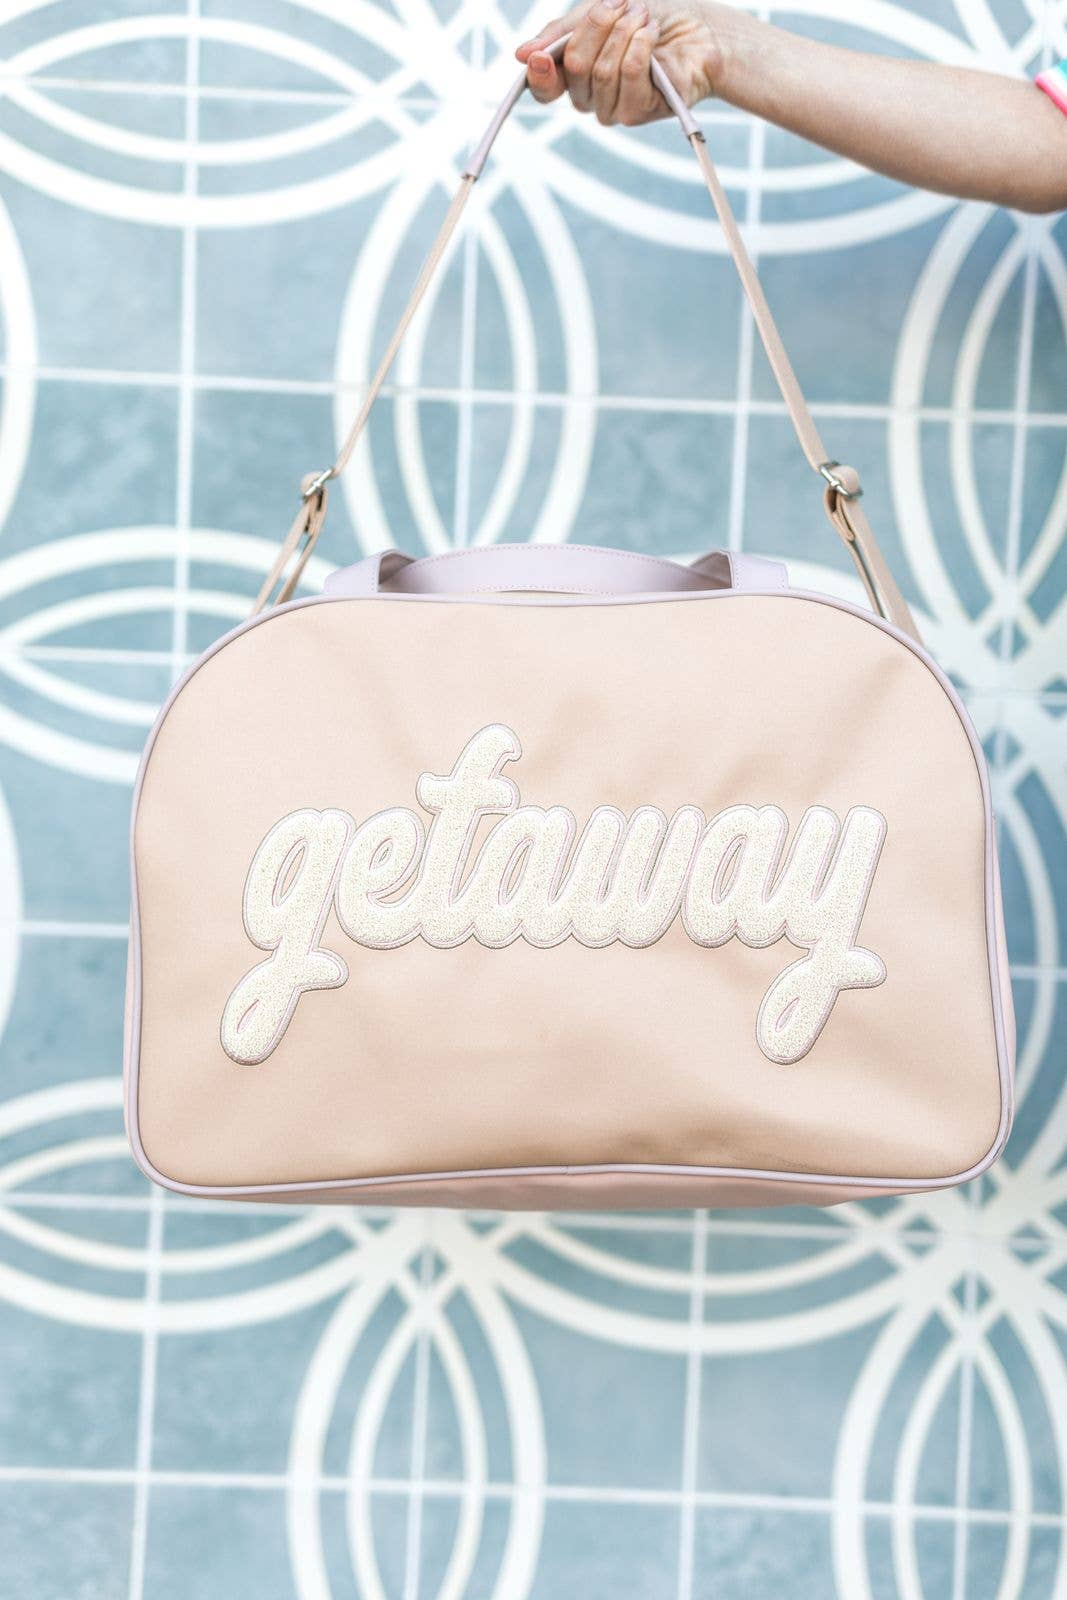 Getaway Weekender Duffle Bag (Light Tan)